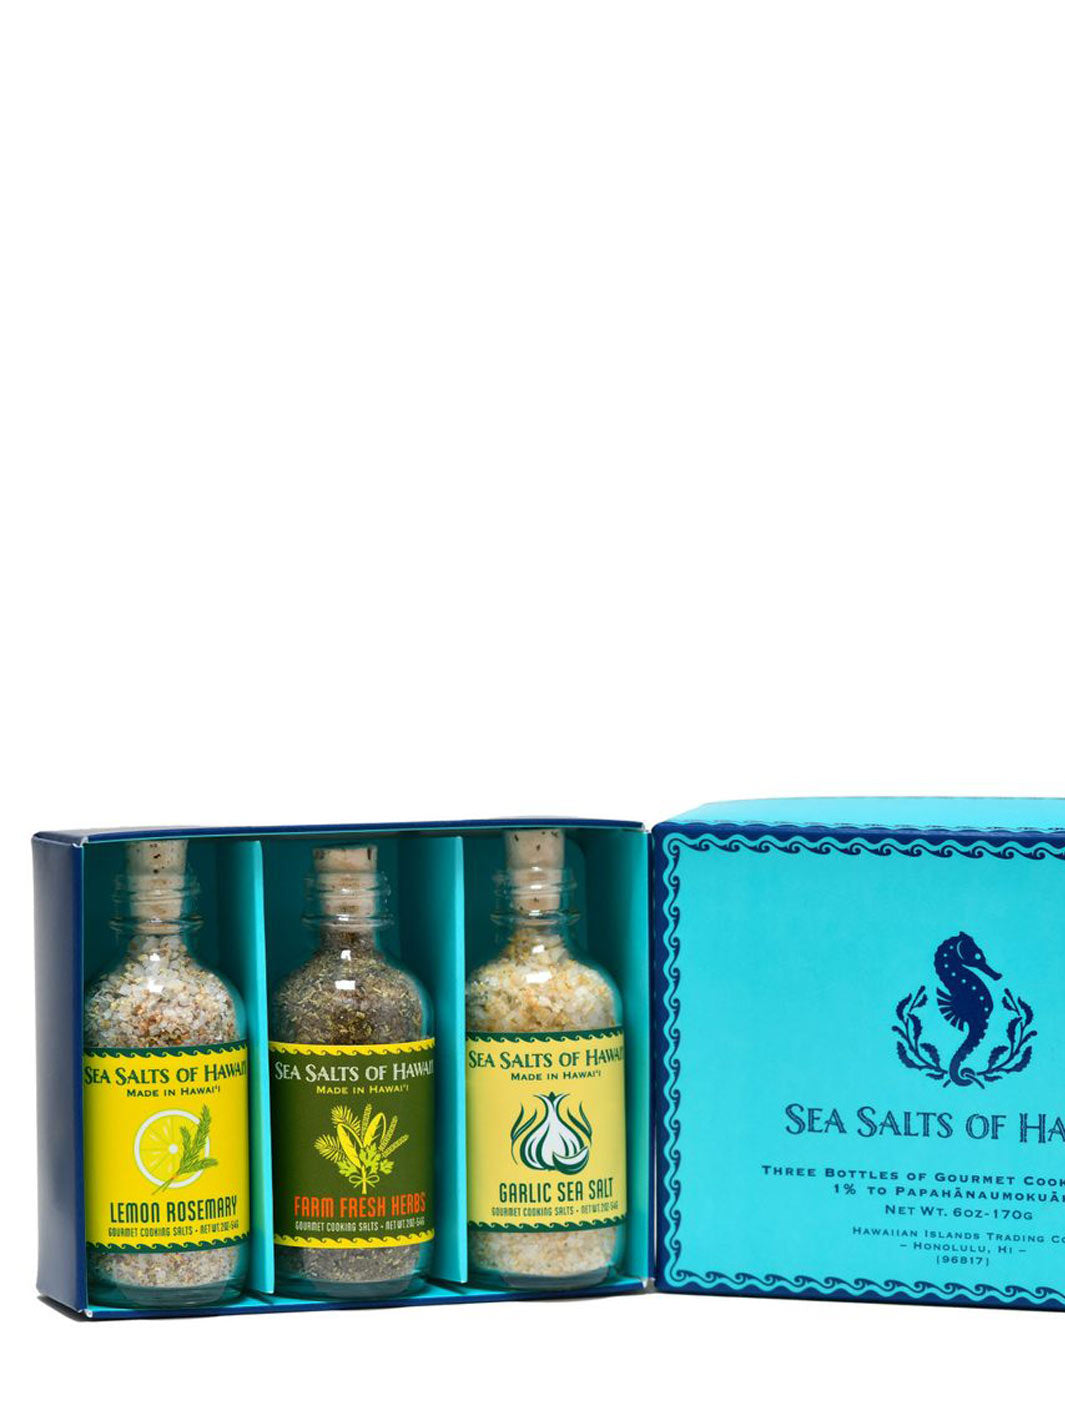 Flavored Hawaiian Sea Salt Sampler Gift Box